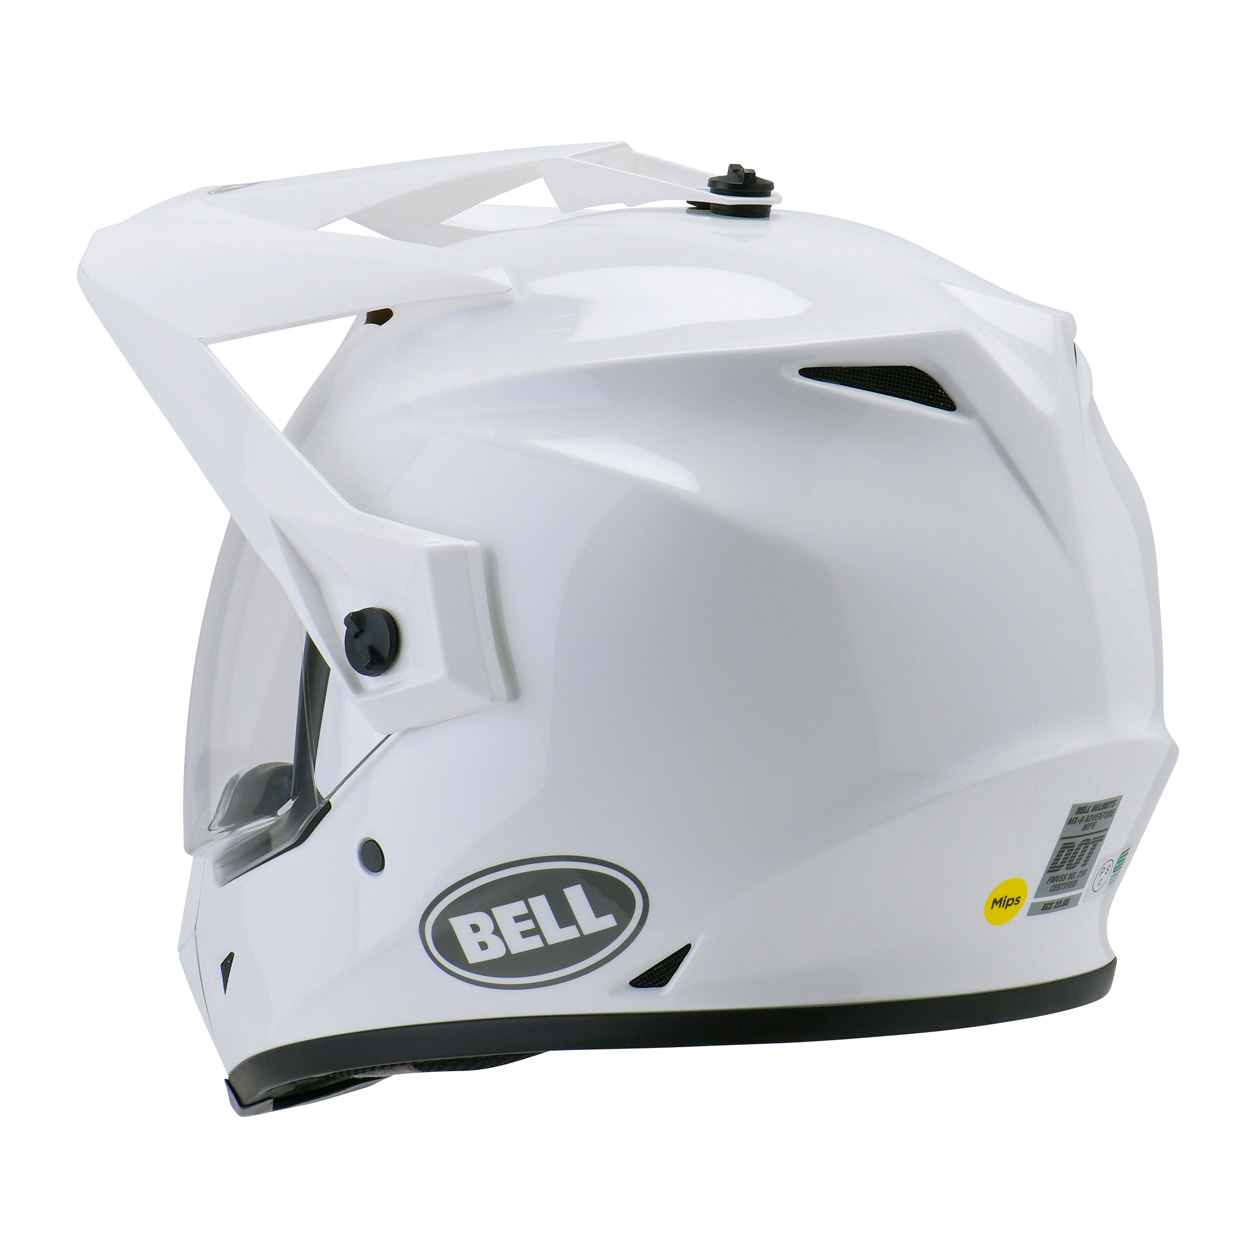 BELL(ベル) バイク オフロードヘルメット MX-9 ADVENTURE MIPS ダルトン ホワイト ハイビズイエロー L ホワイト  ハイビズイエロー 通販